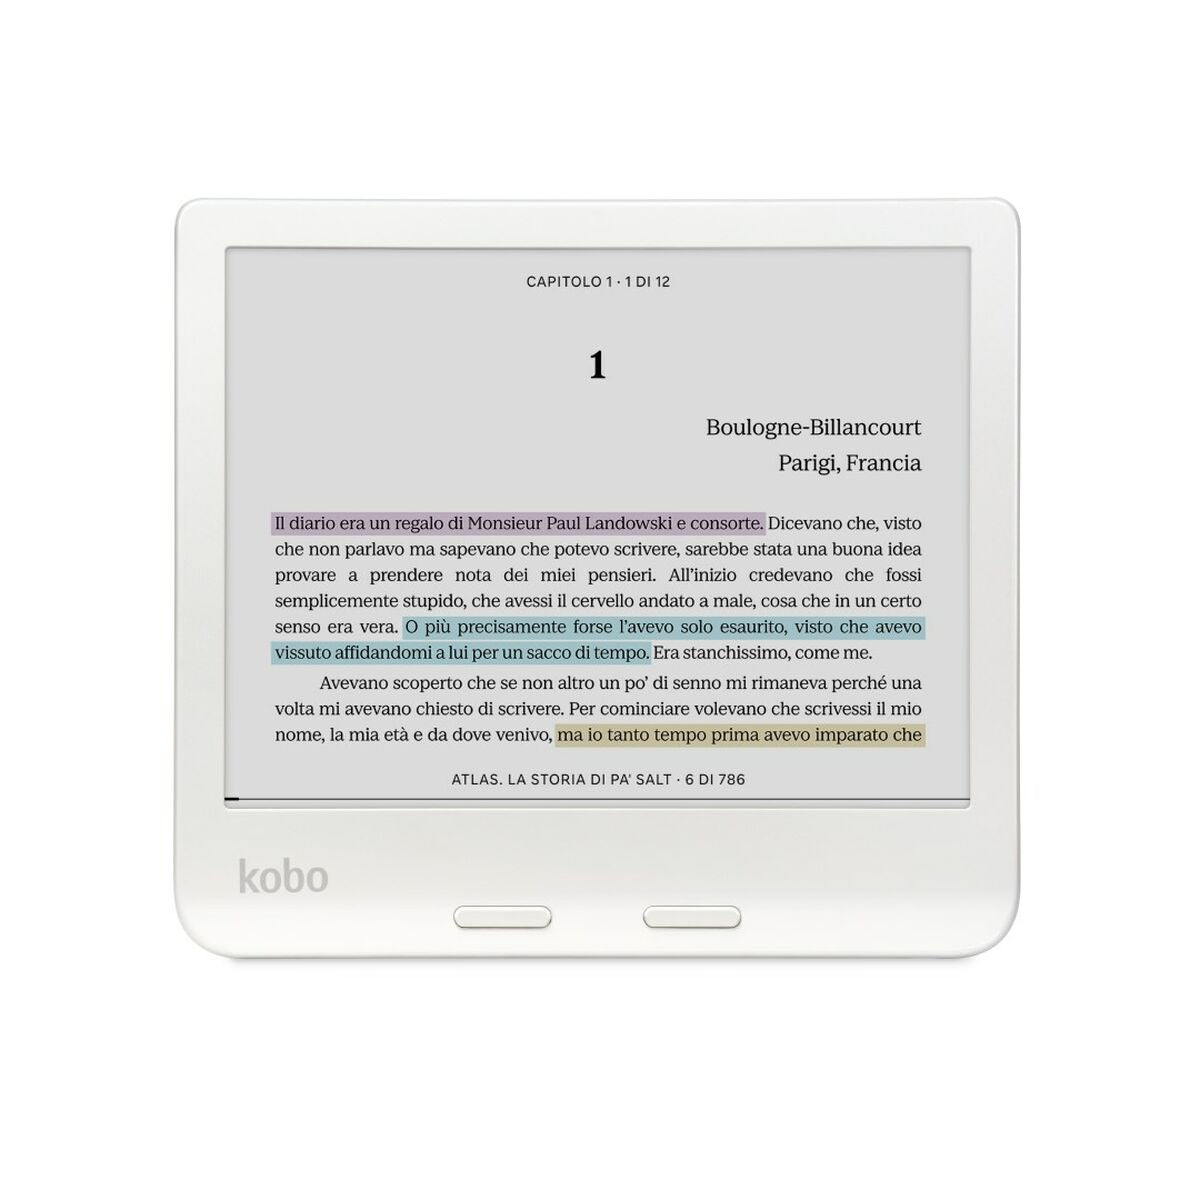 eBook Rakuten Bianco 32 GB